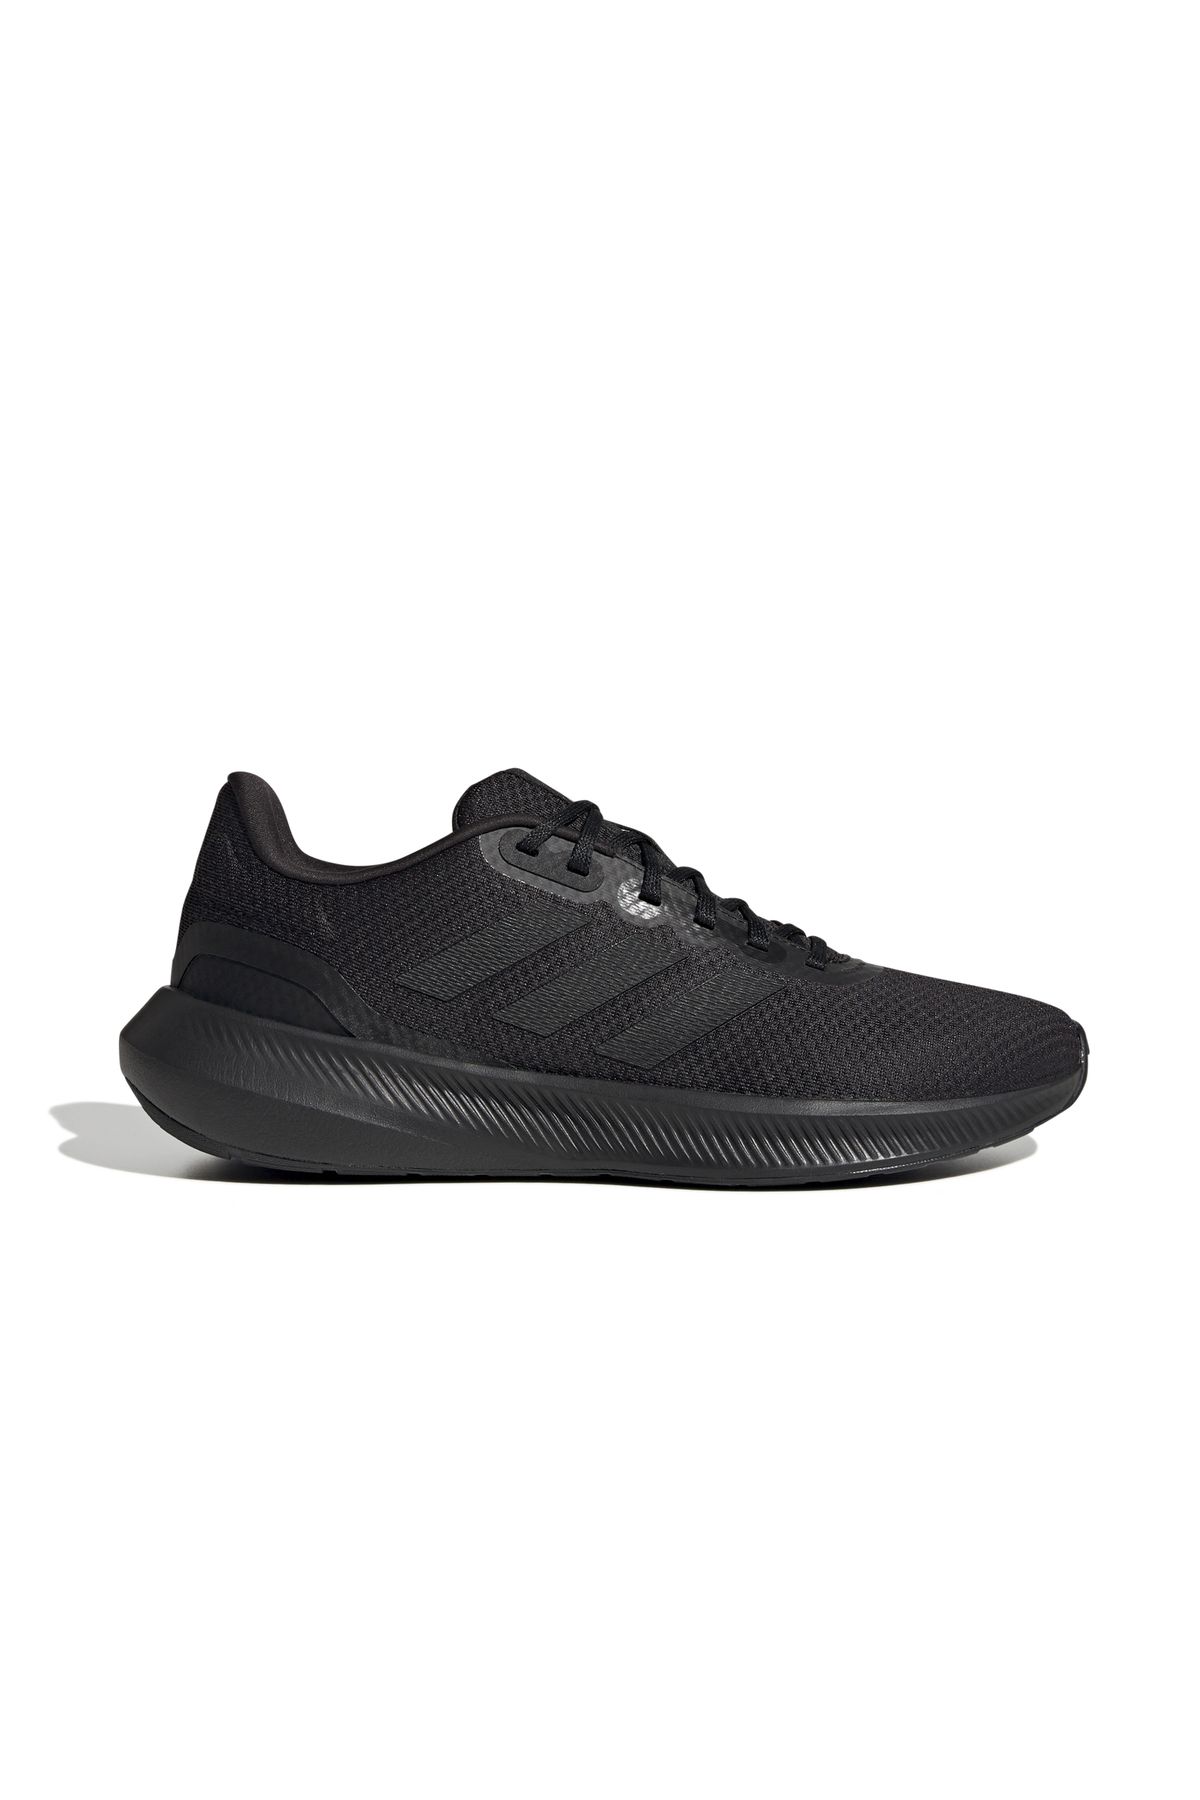 adidas Runfalcon 3.0 Erkek Koşu Ayakkabısı Siyah Sneaker